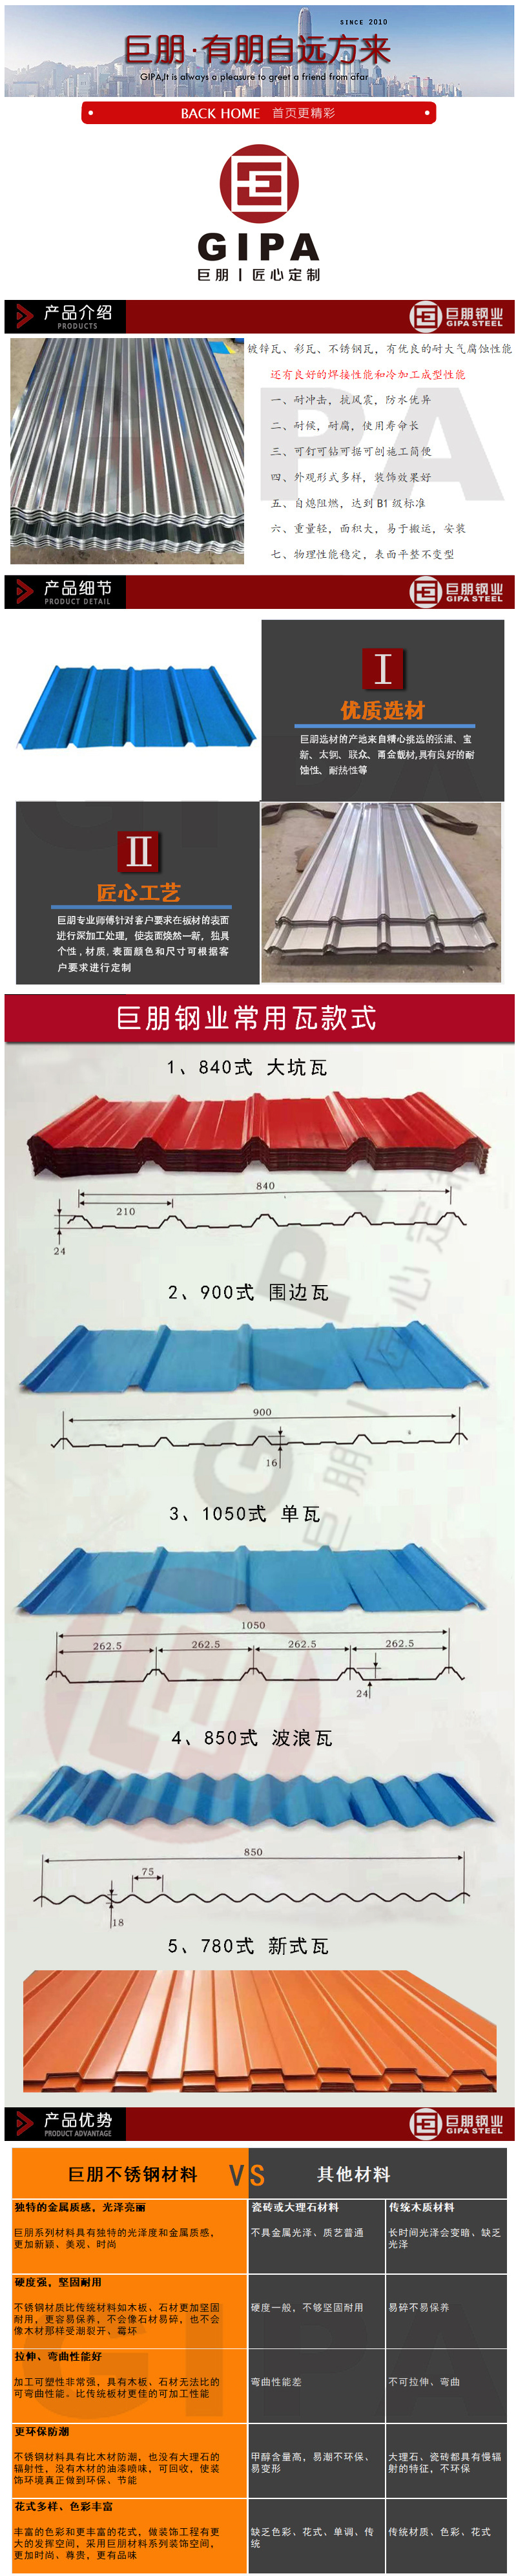 304不锈钢瓦楞板 彩钢瓦 屋面瓦 压型板 屋顶瓦 现场加工 可定制-阿里巴巴.png